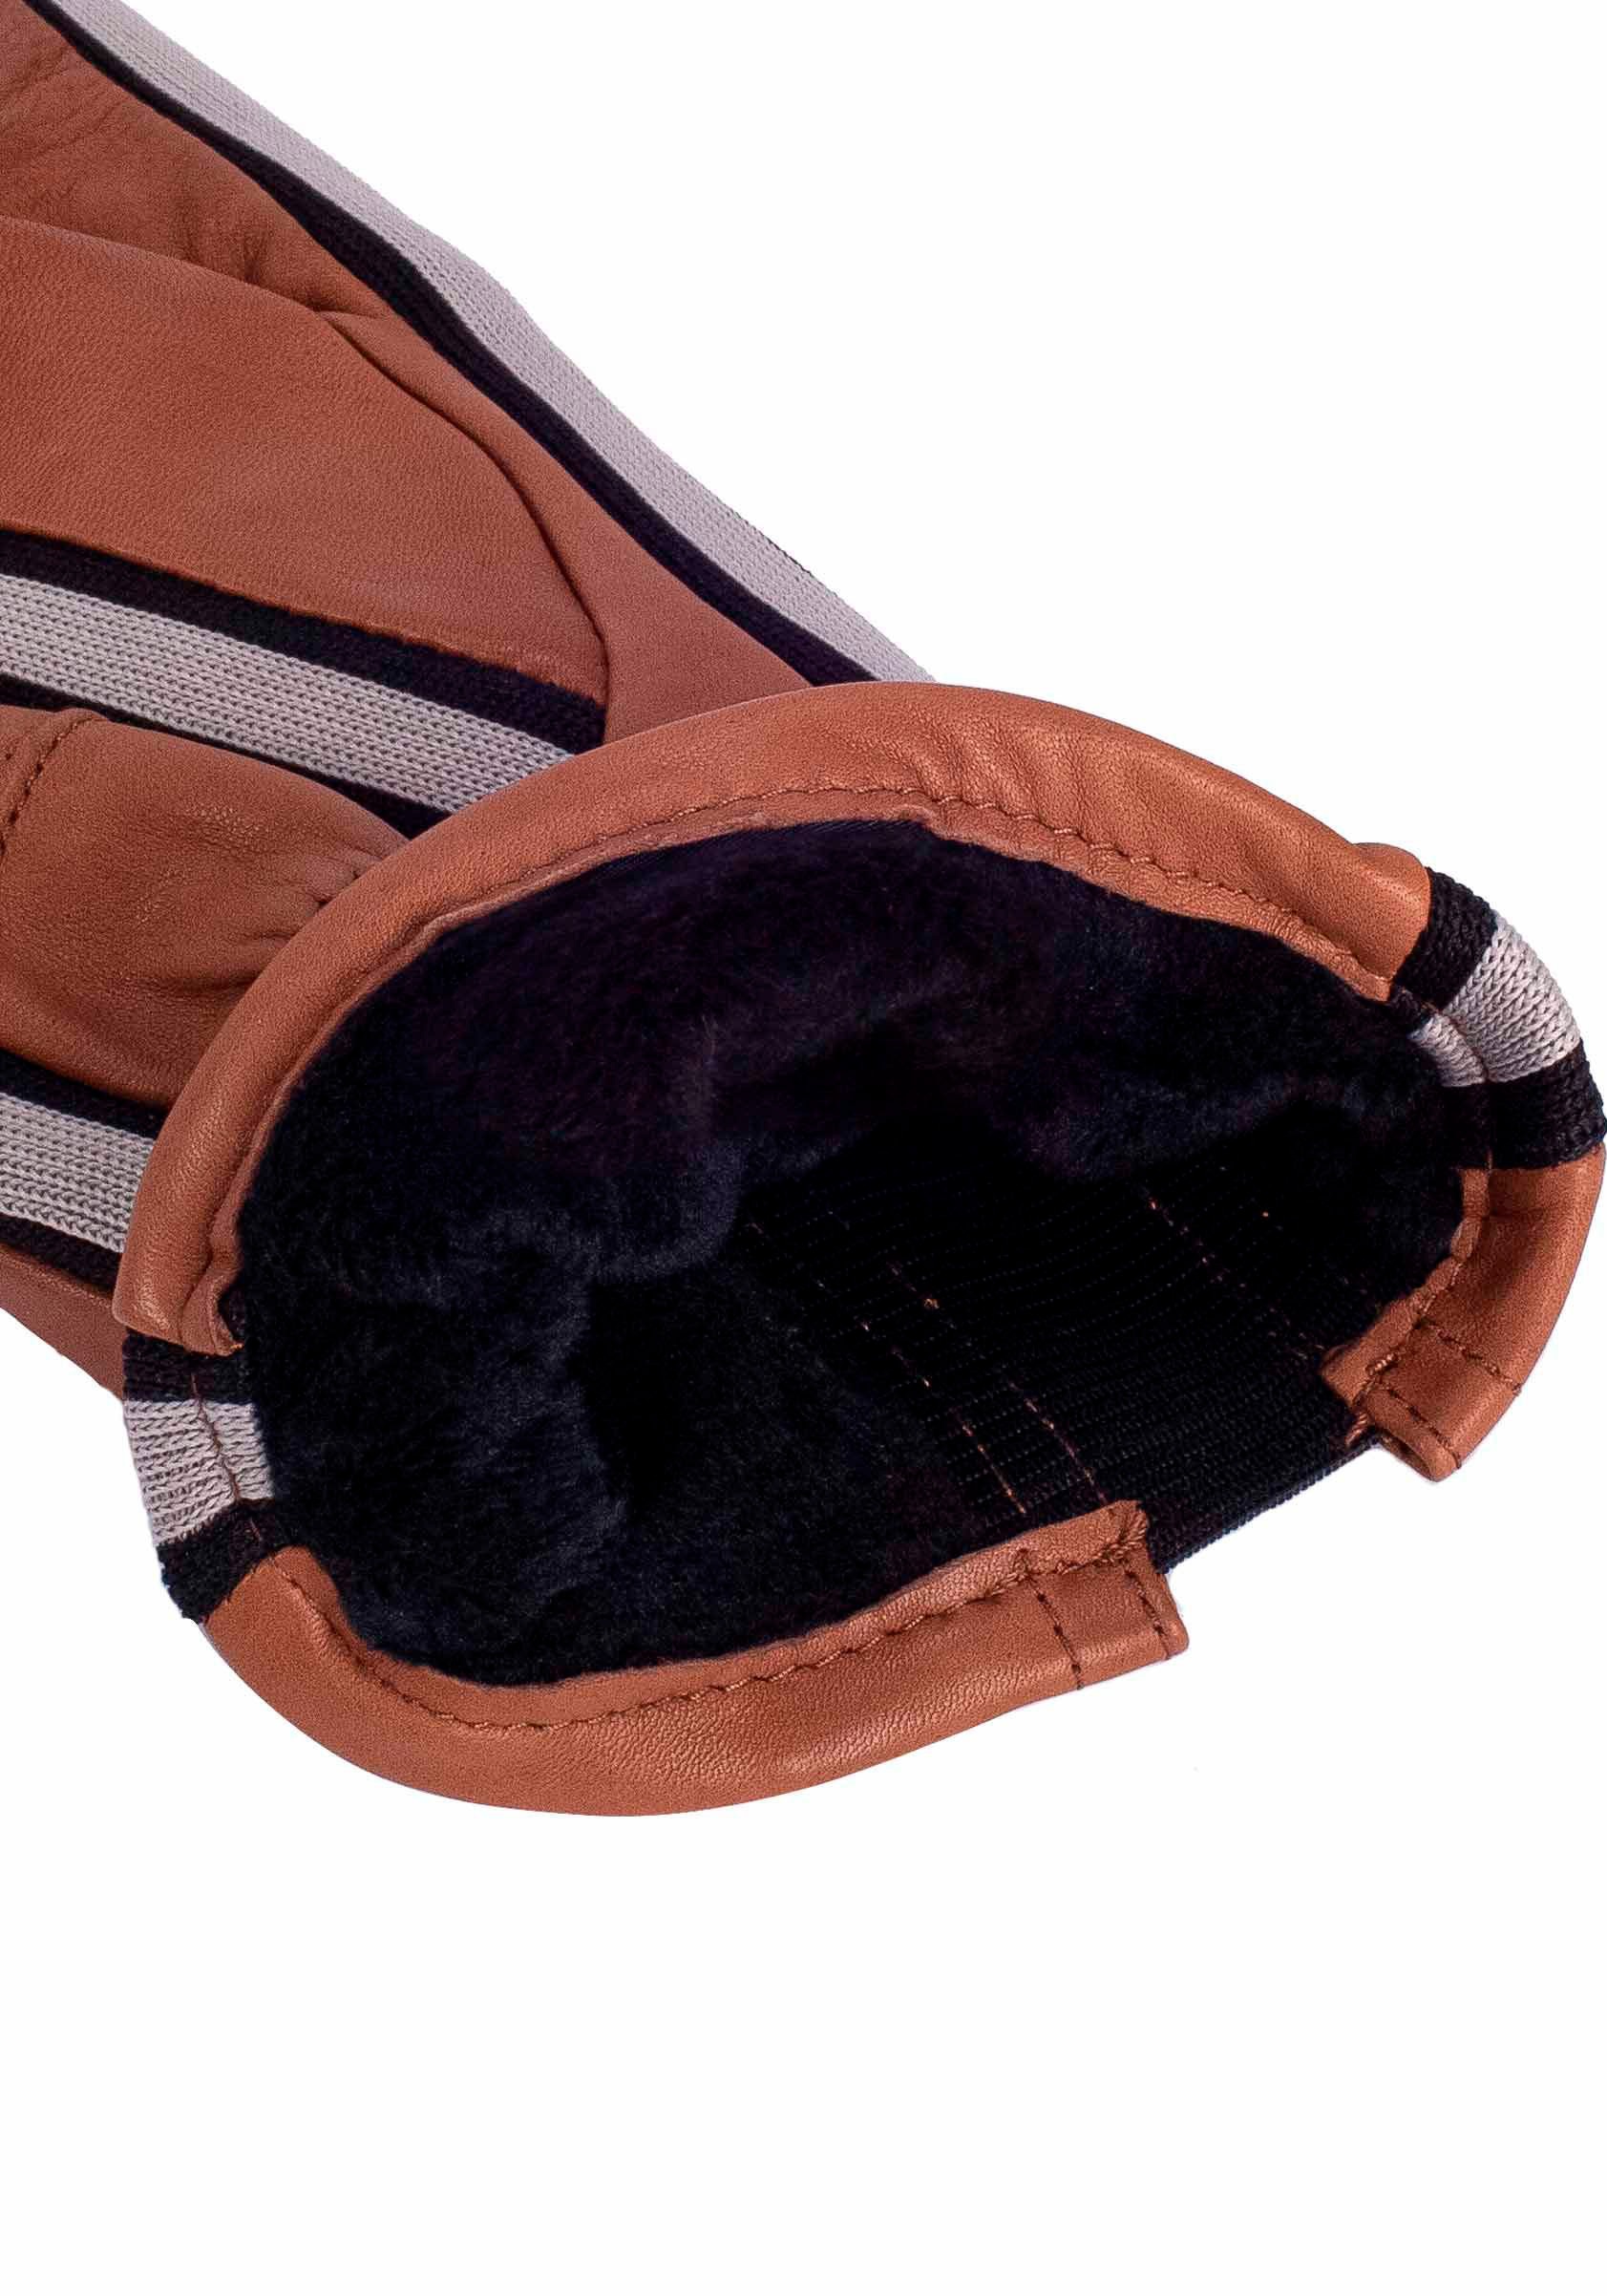 KESSLER Lederhandschuhe »Gil Touch«, sportliches Design im Sneaker- Look mit Touchfunktion